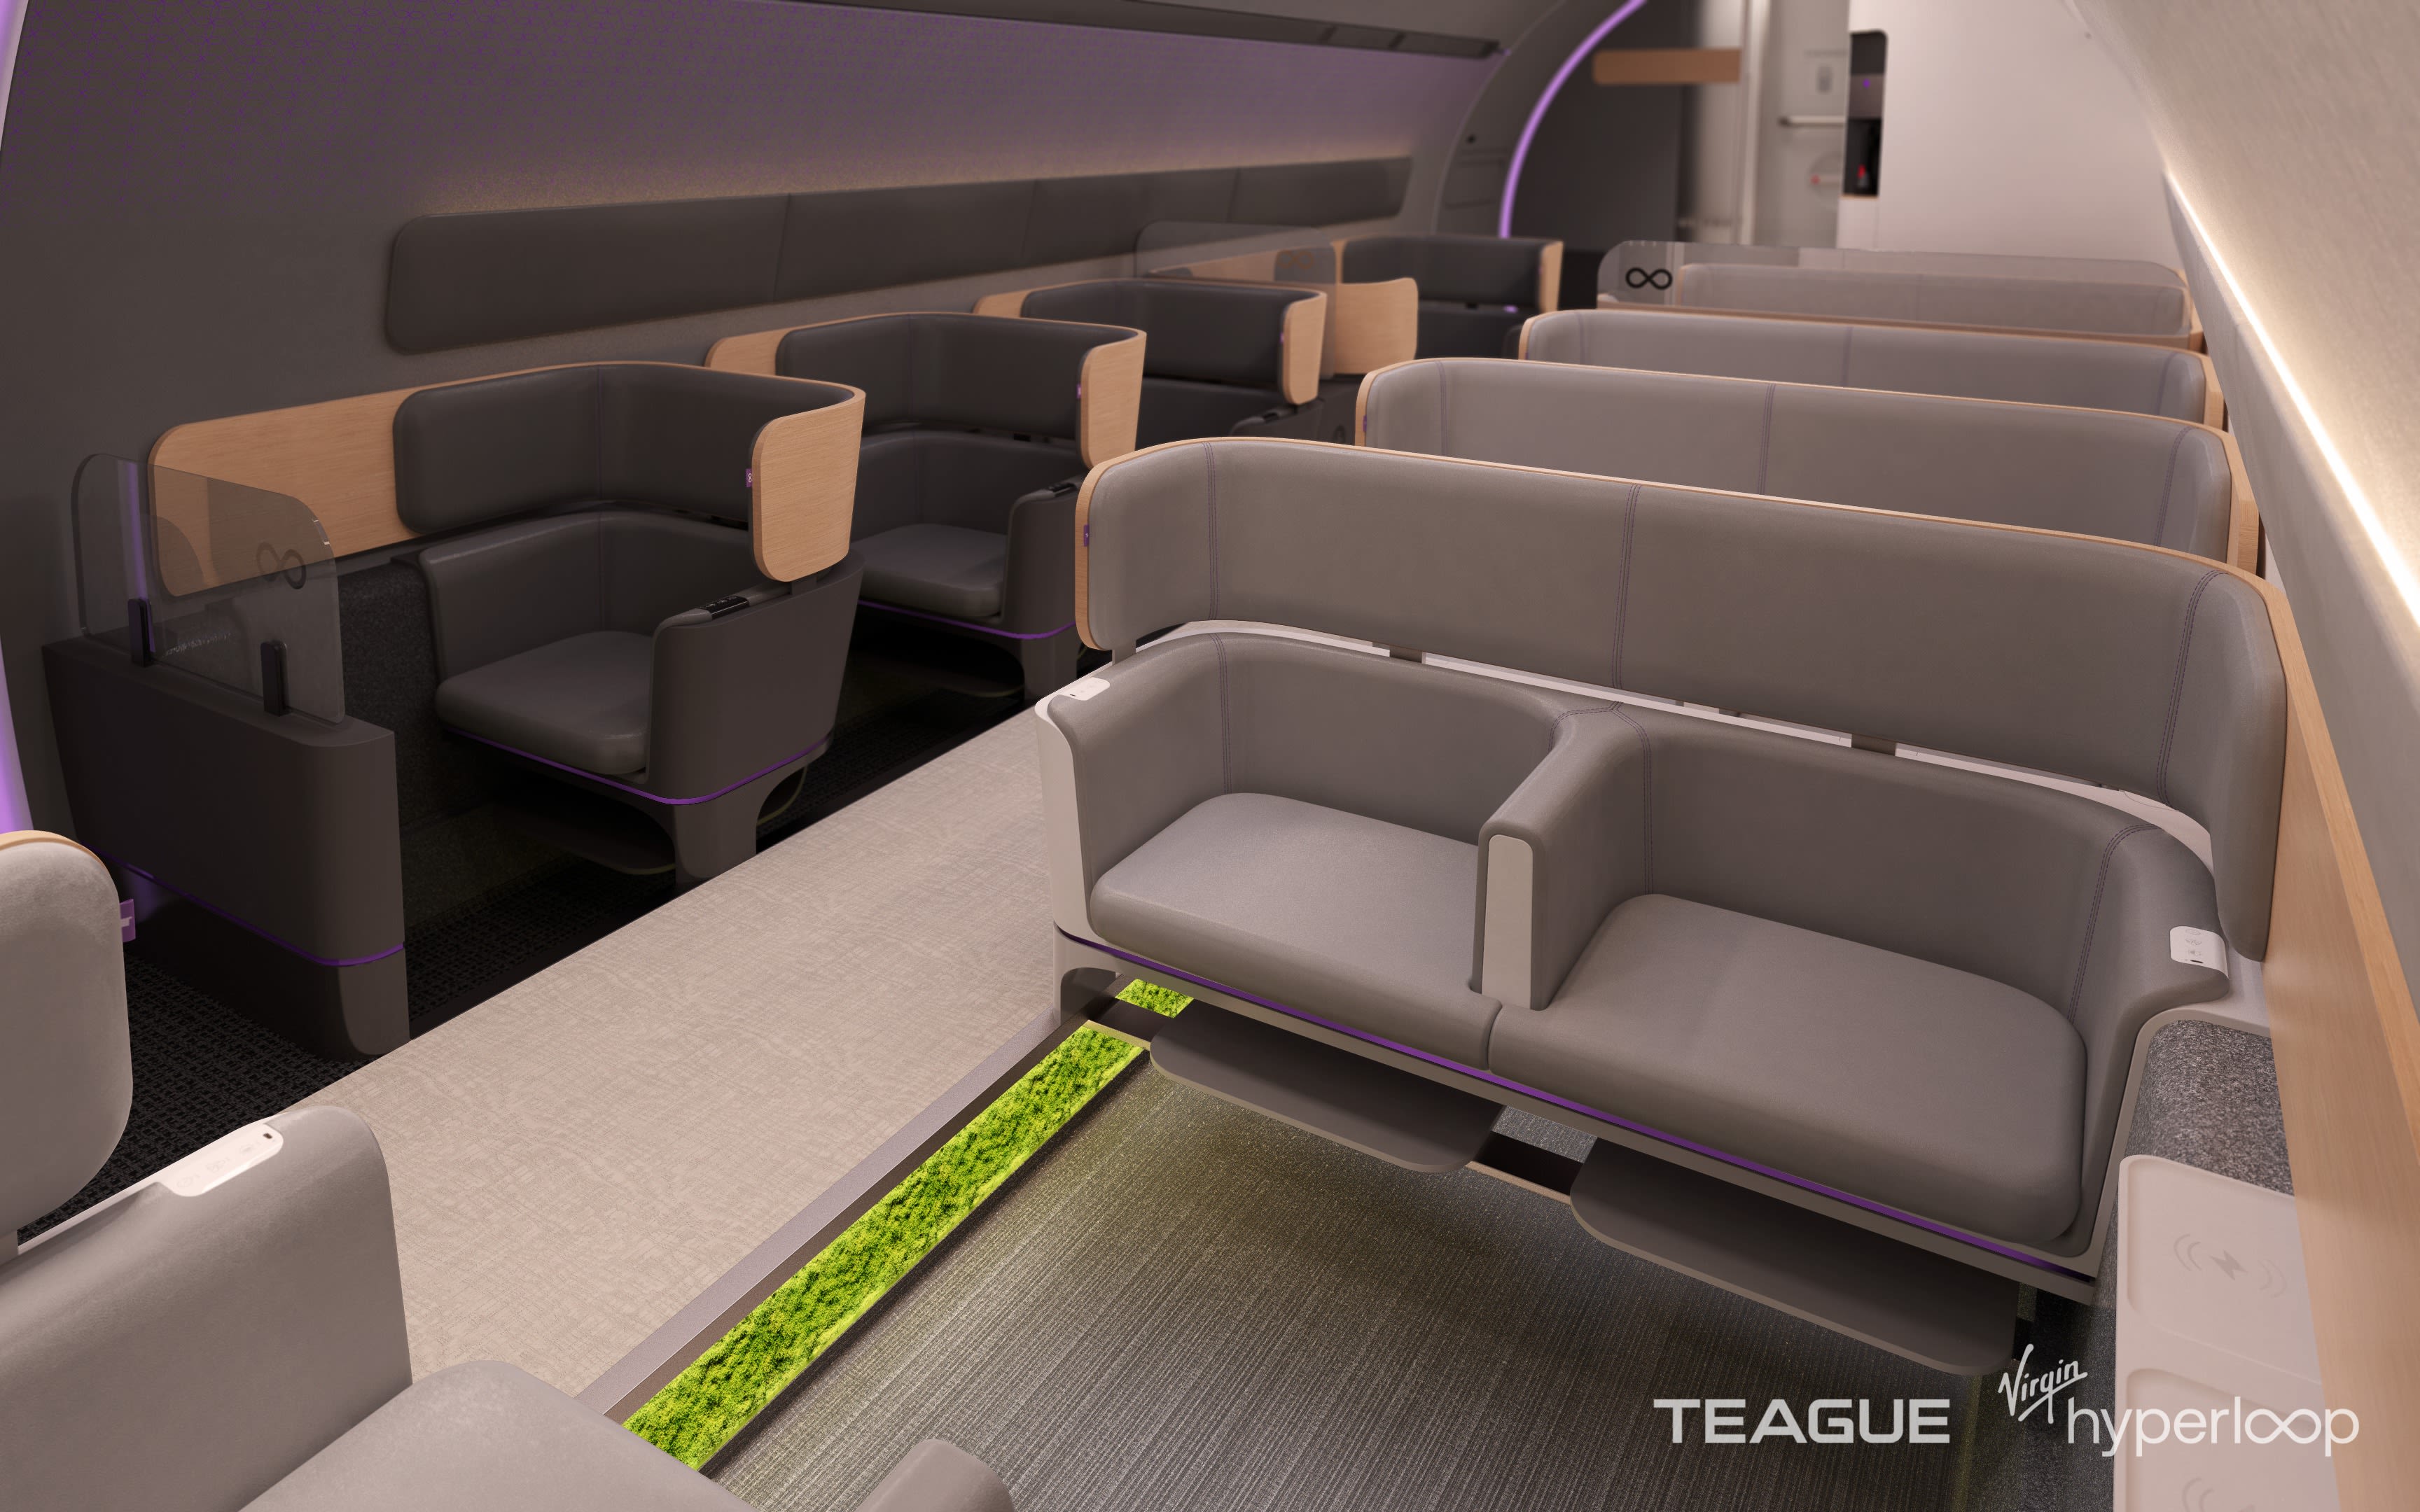 Virgin Hyperloop pod interior render